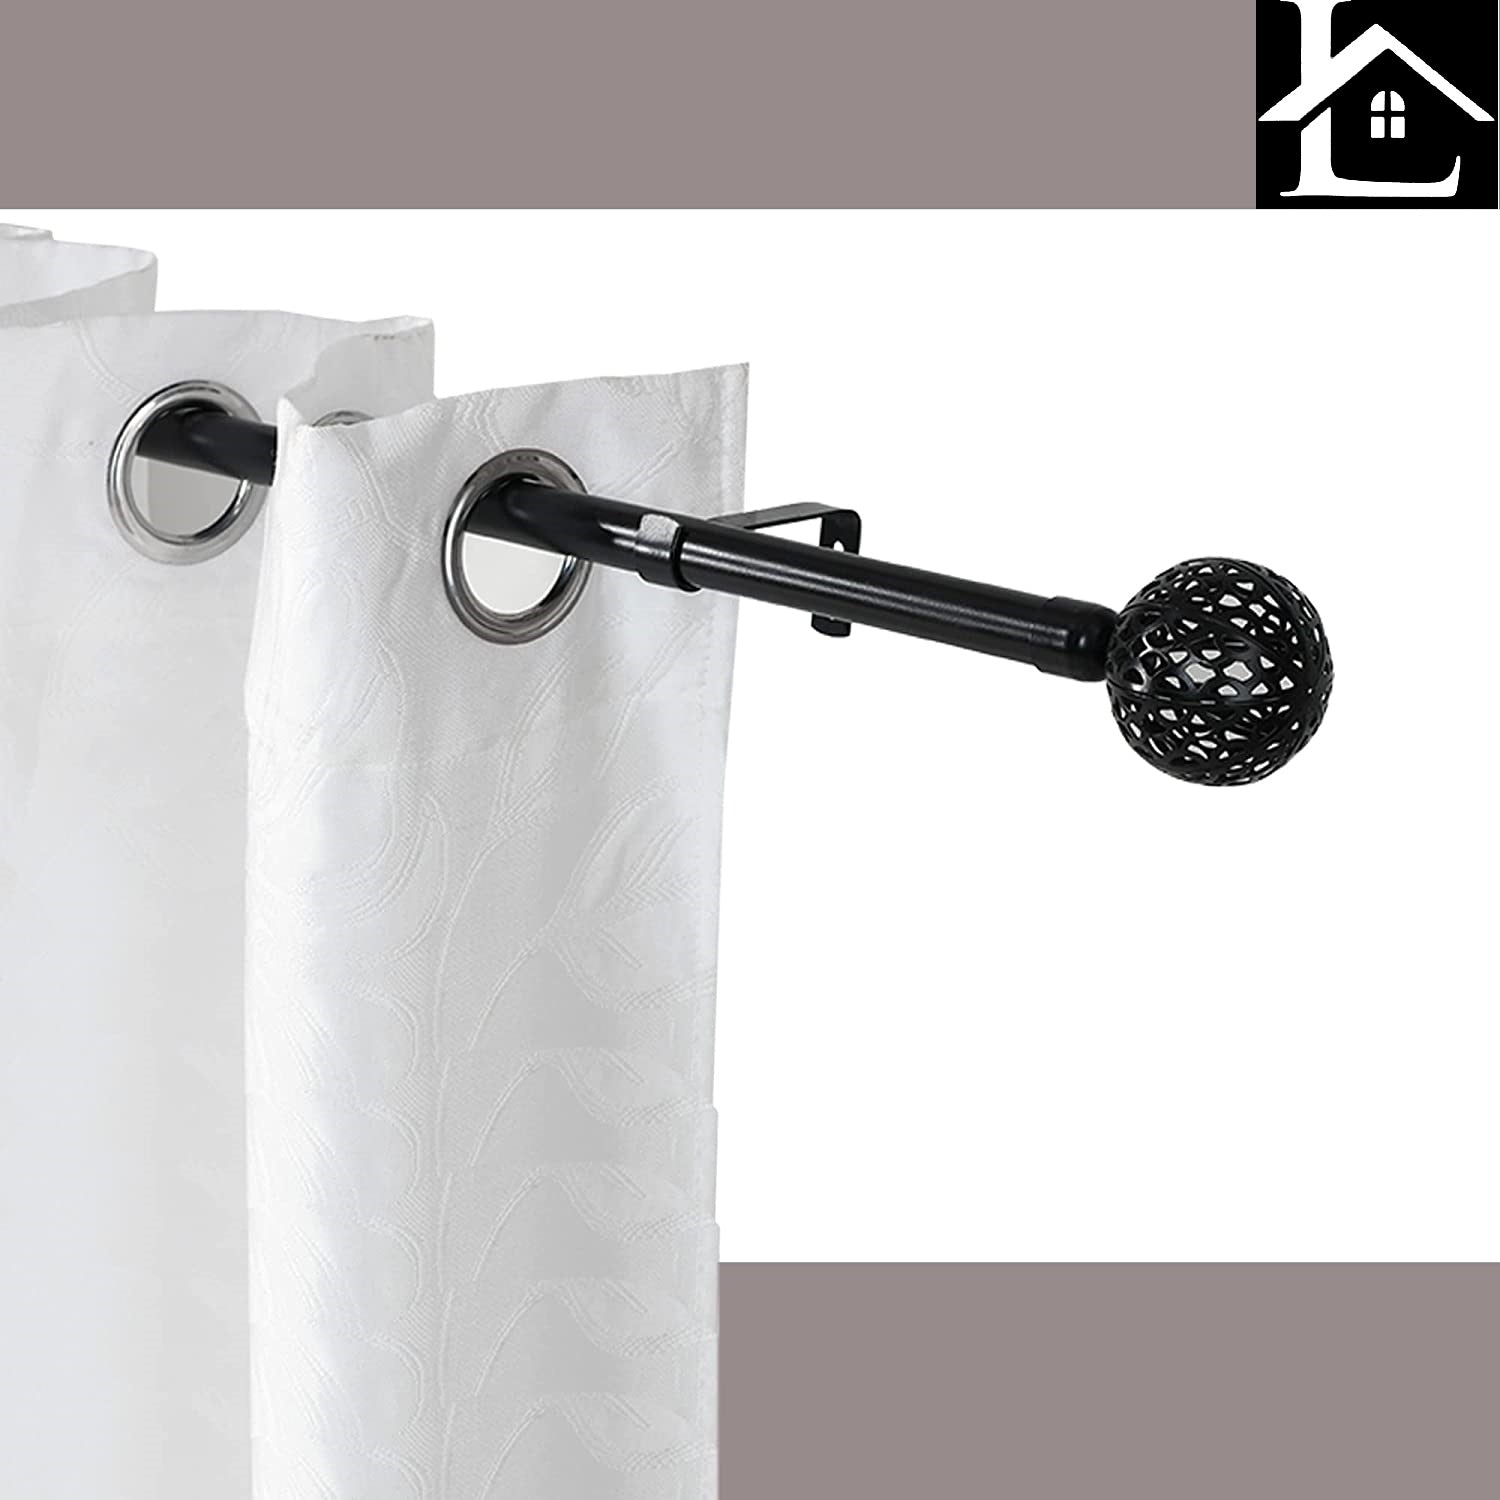 Barra de cortina extensible a presion 3 metros: ¡Encuentra la solución  perfecta para tus ventanas con nuestra barra de cortina de calidad y fácil  instalación!